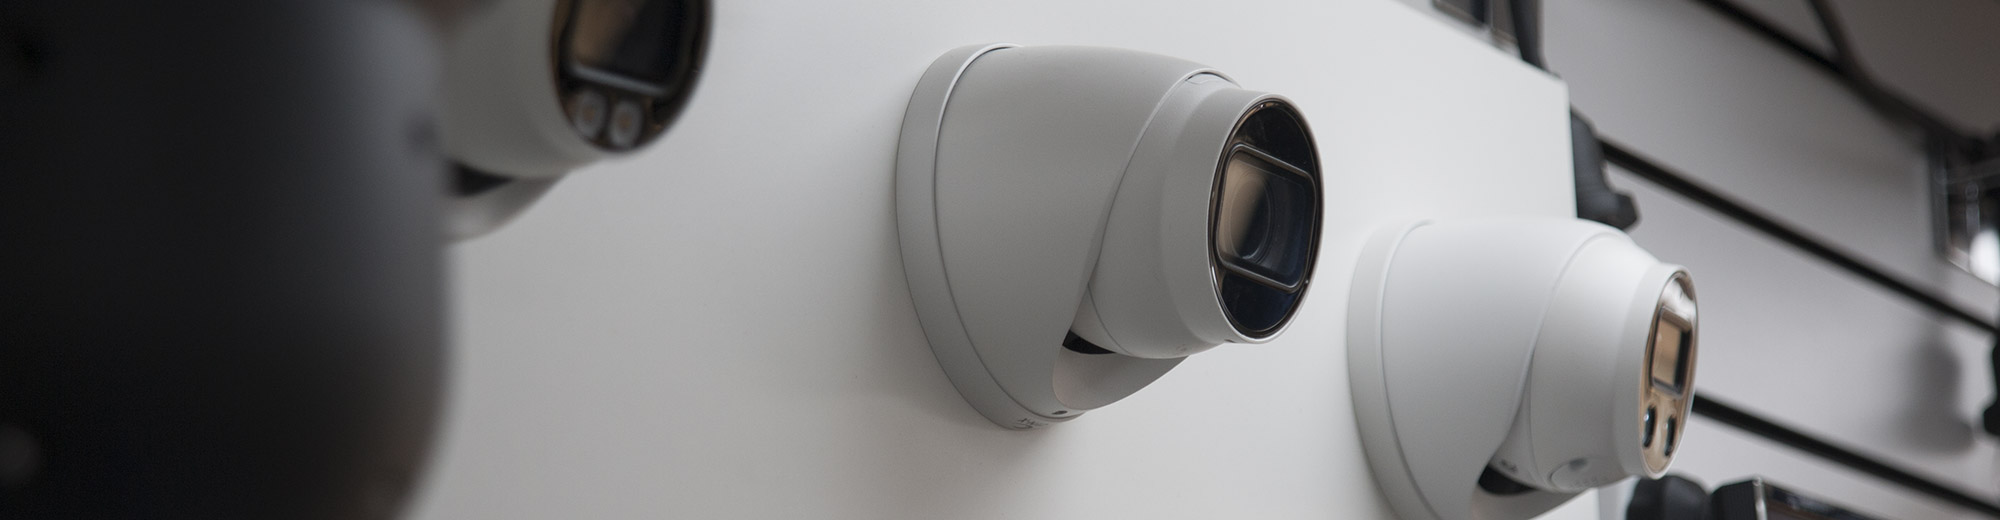 CCTV cameras in Banbury